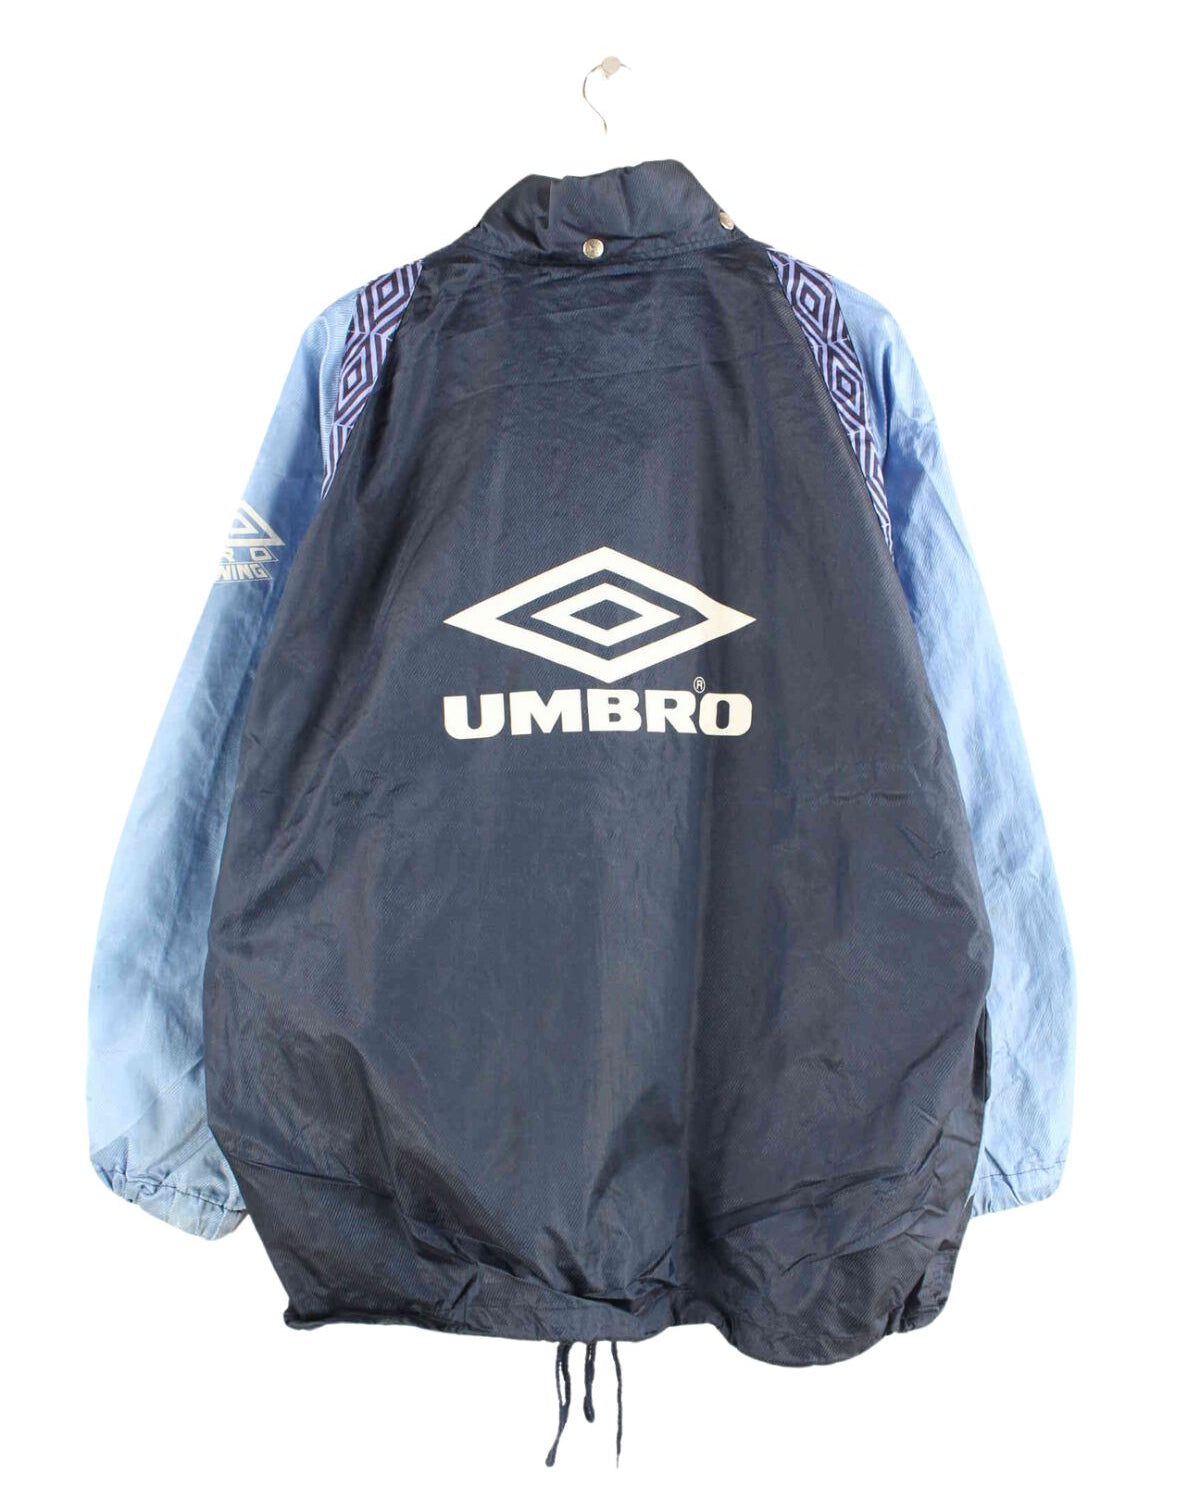 Umbro 90s Vintage Print Trainingsjacke Blau XL (back image)